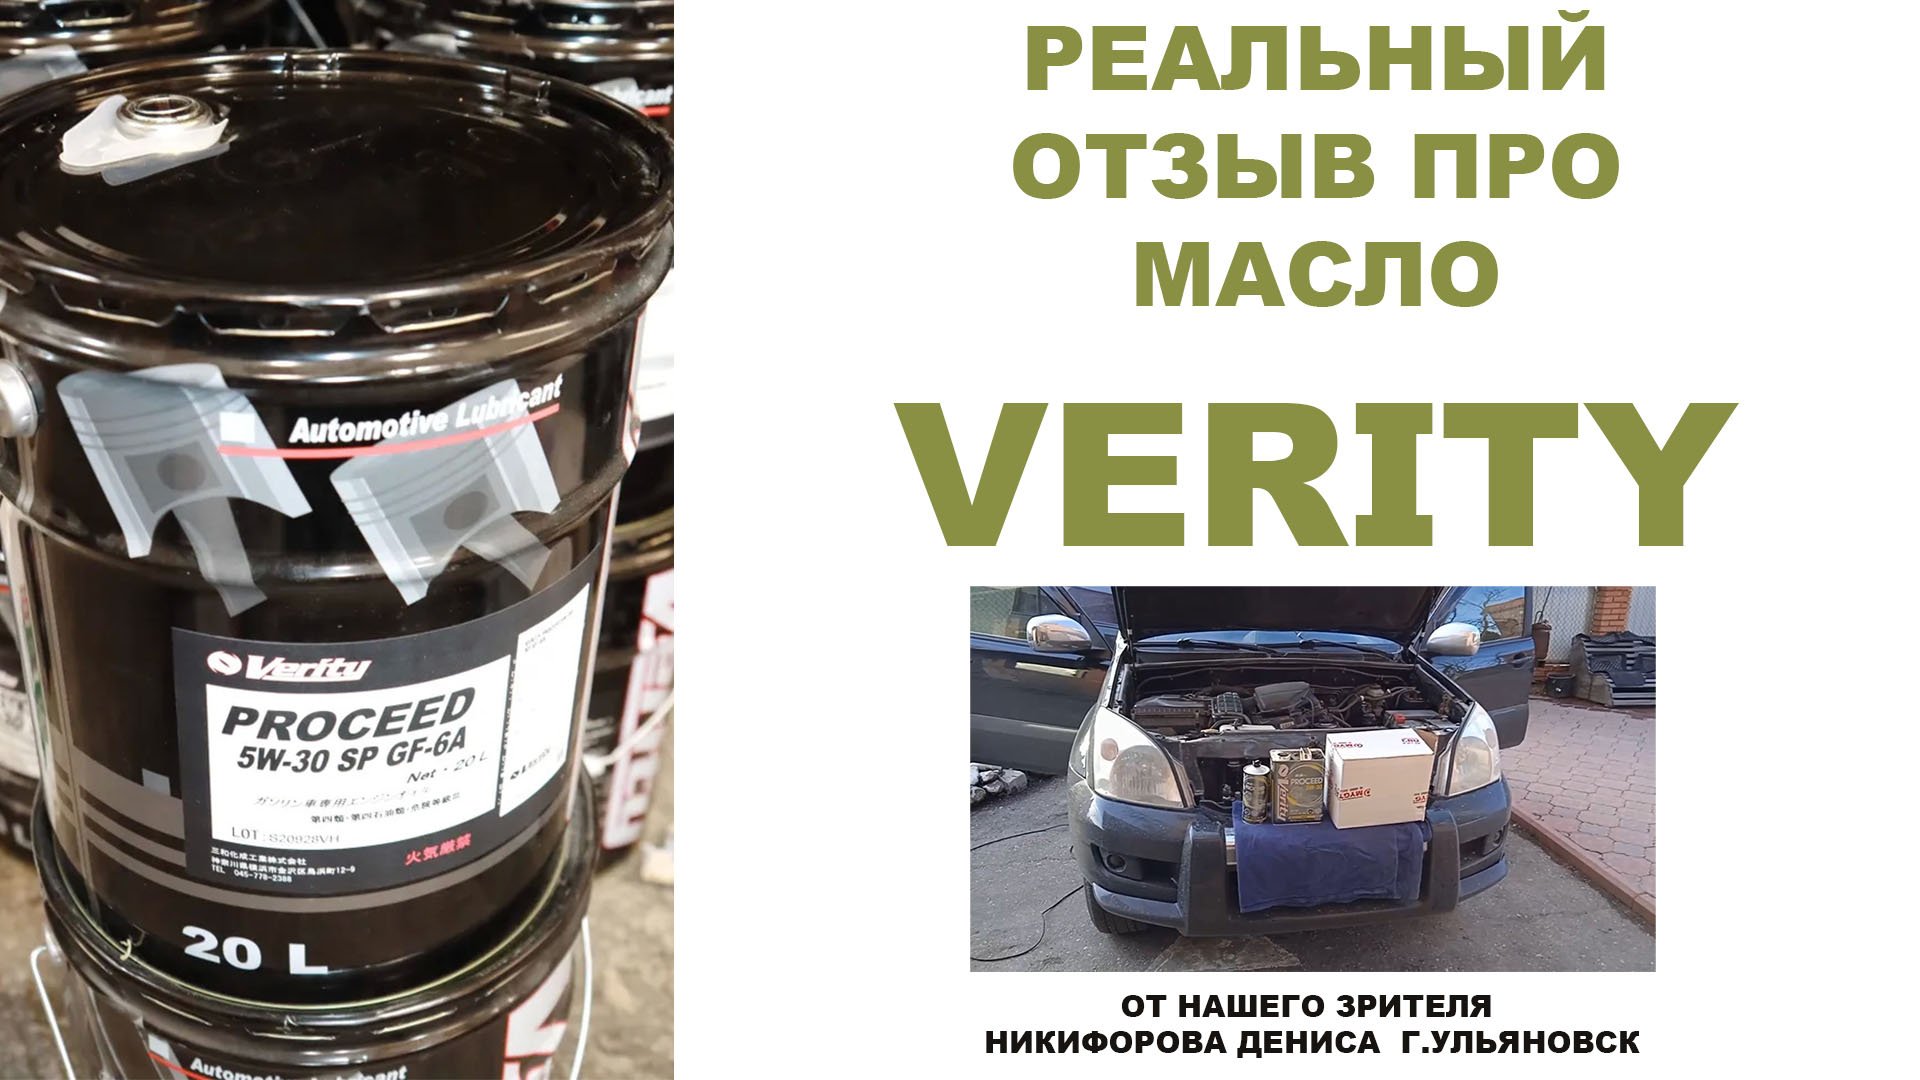 Реальный отзыв про моторное масло VERITY от нашего зрителя Никифорова Дениса  г. Ульяновск